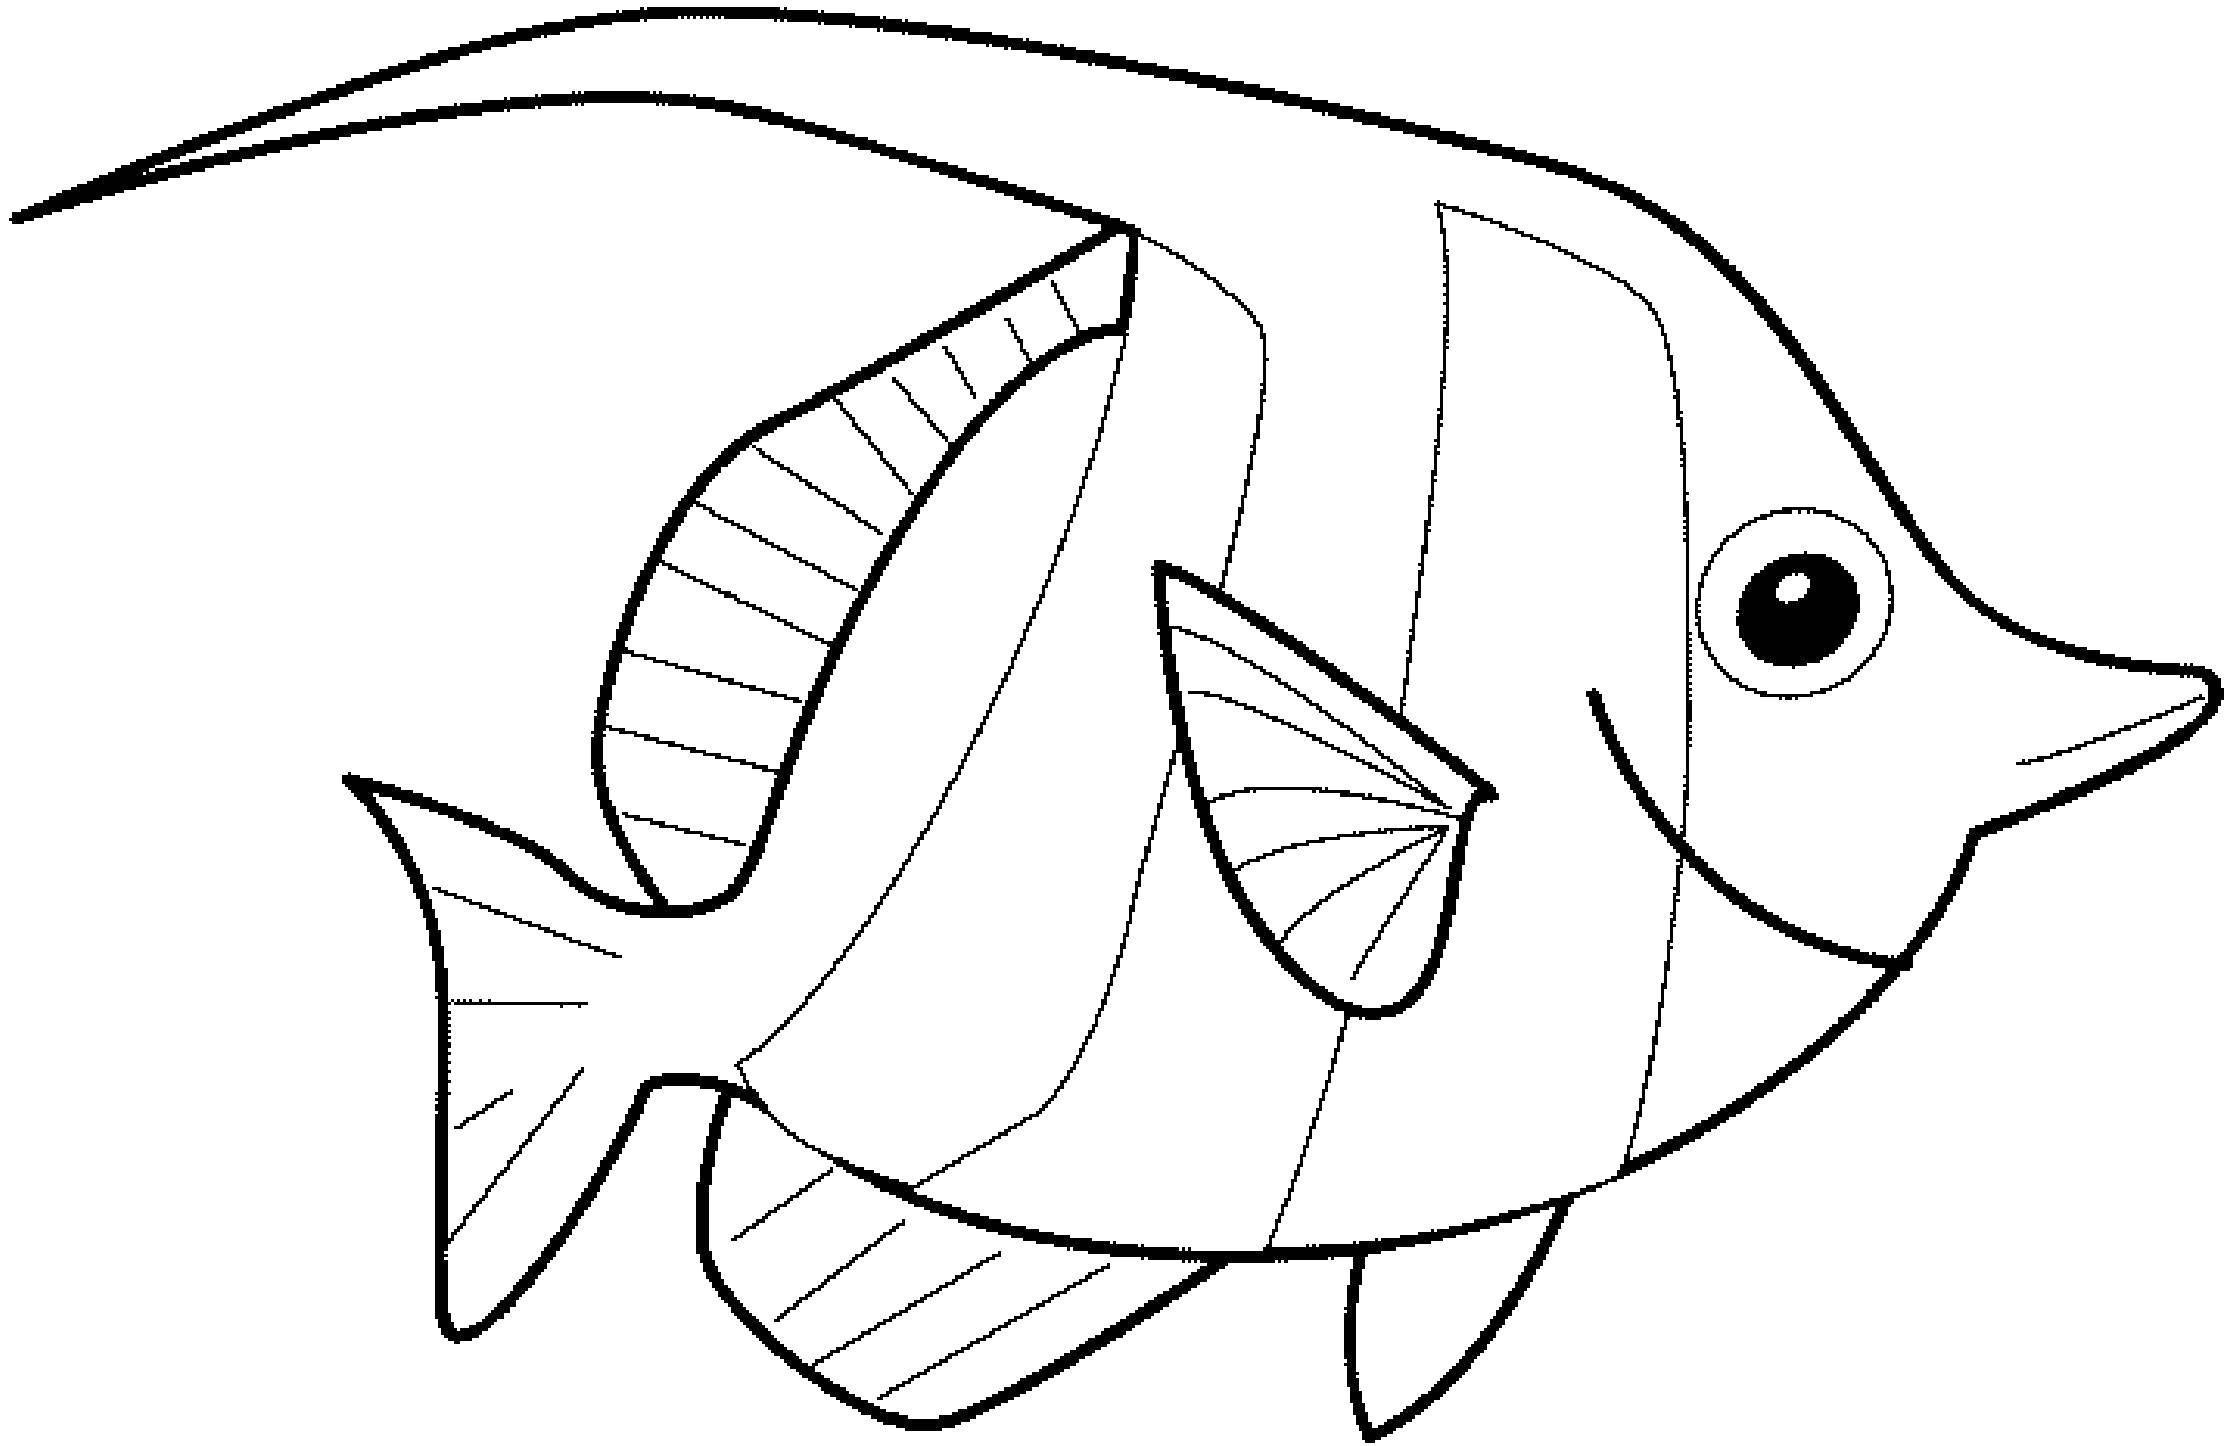 Coloring Royal angel fish. Category fish. Tags:  fish.